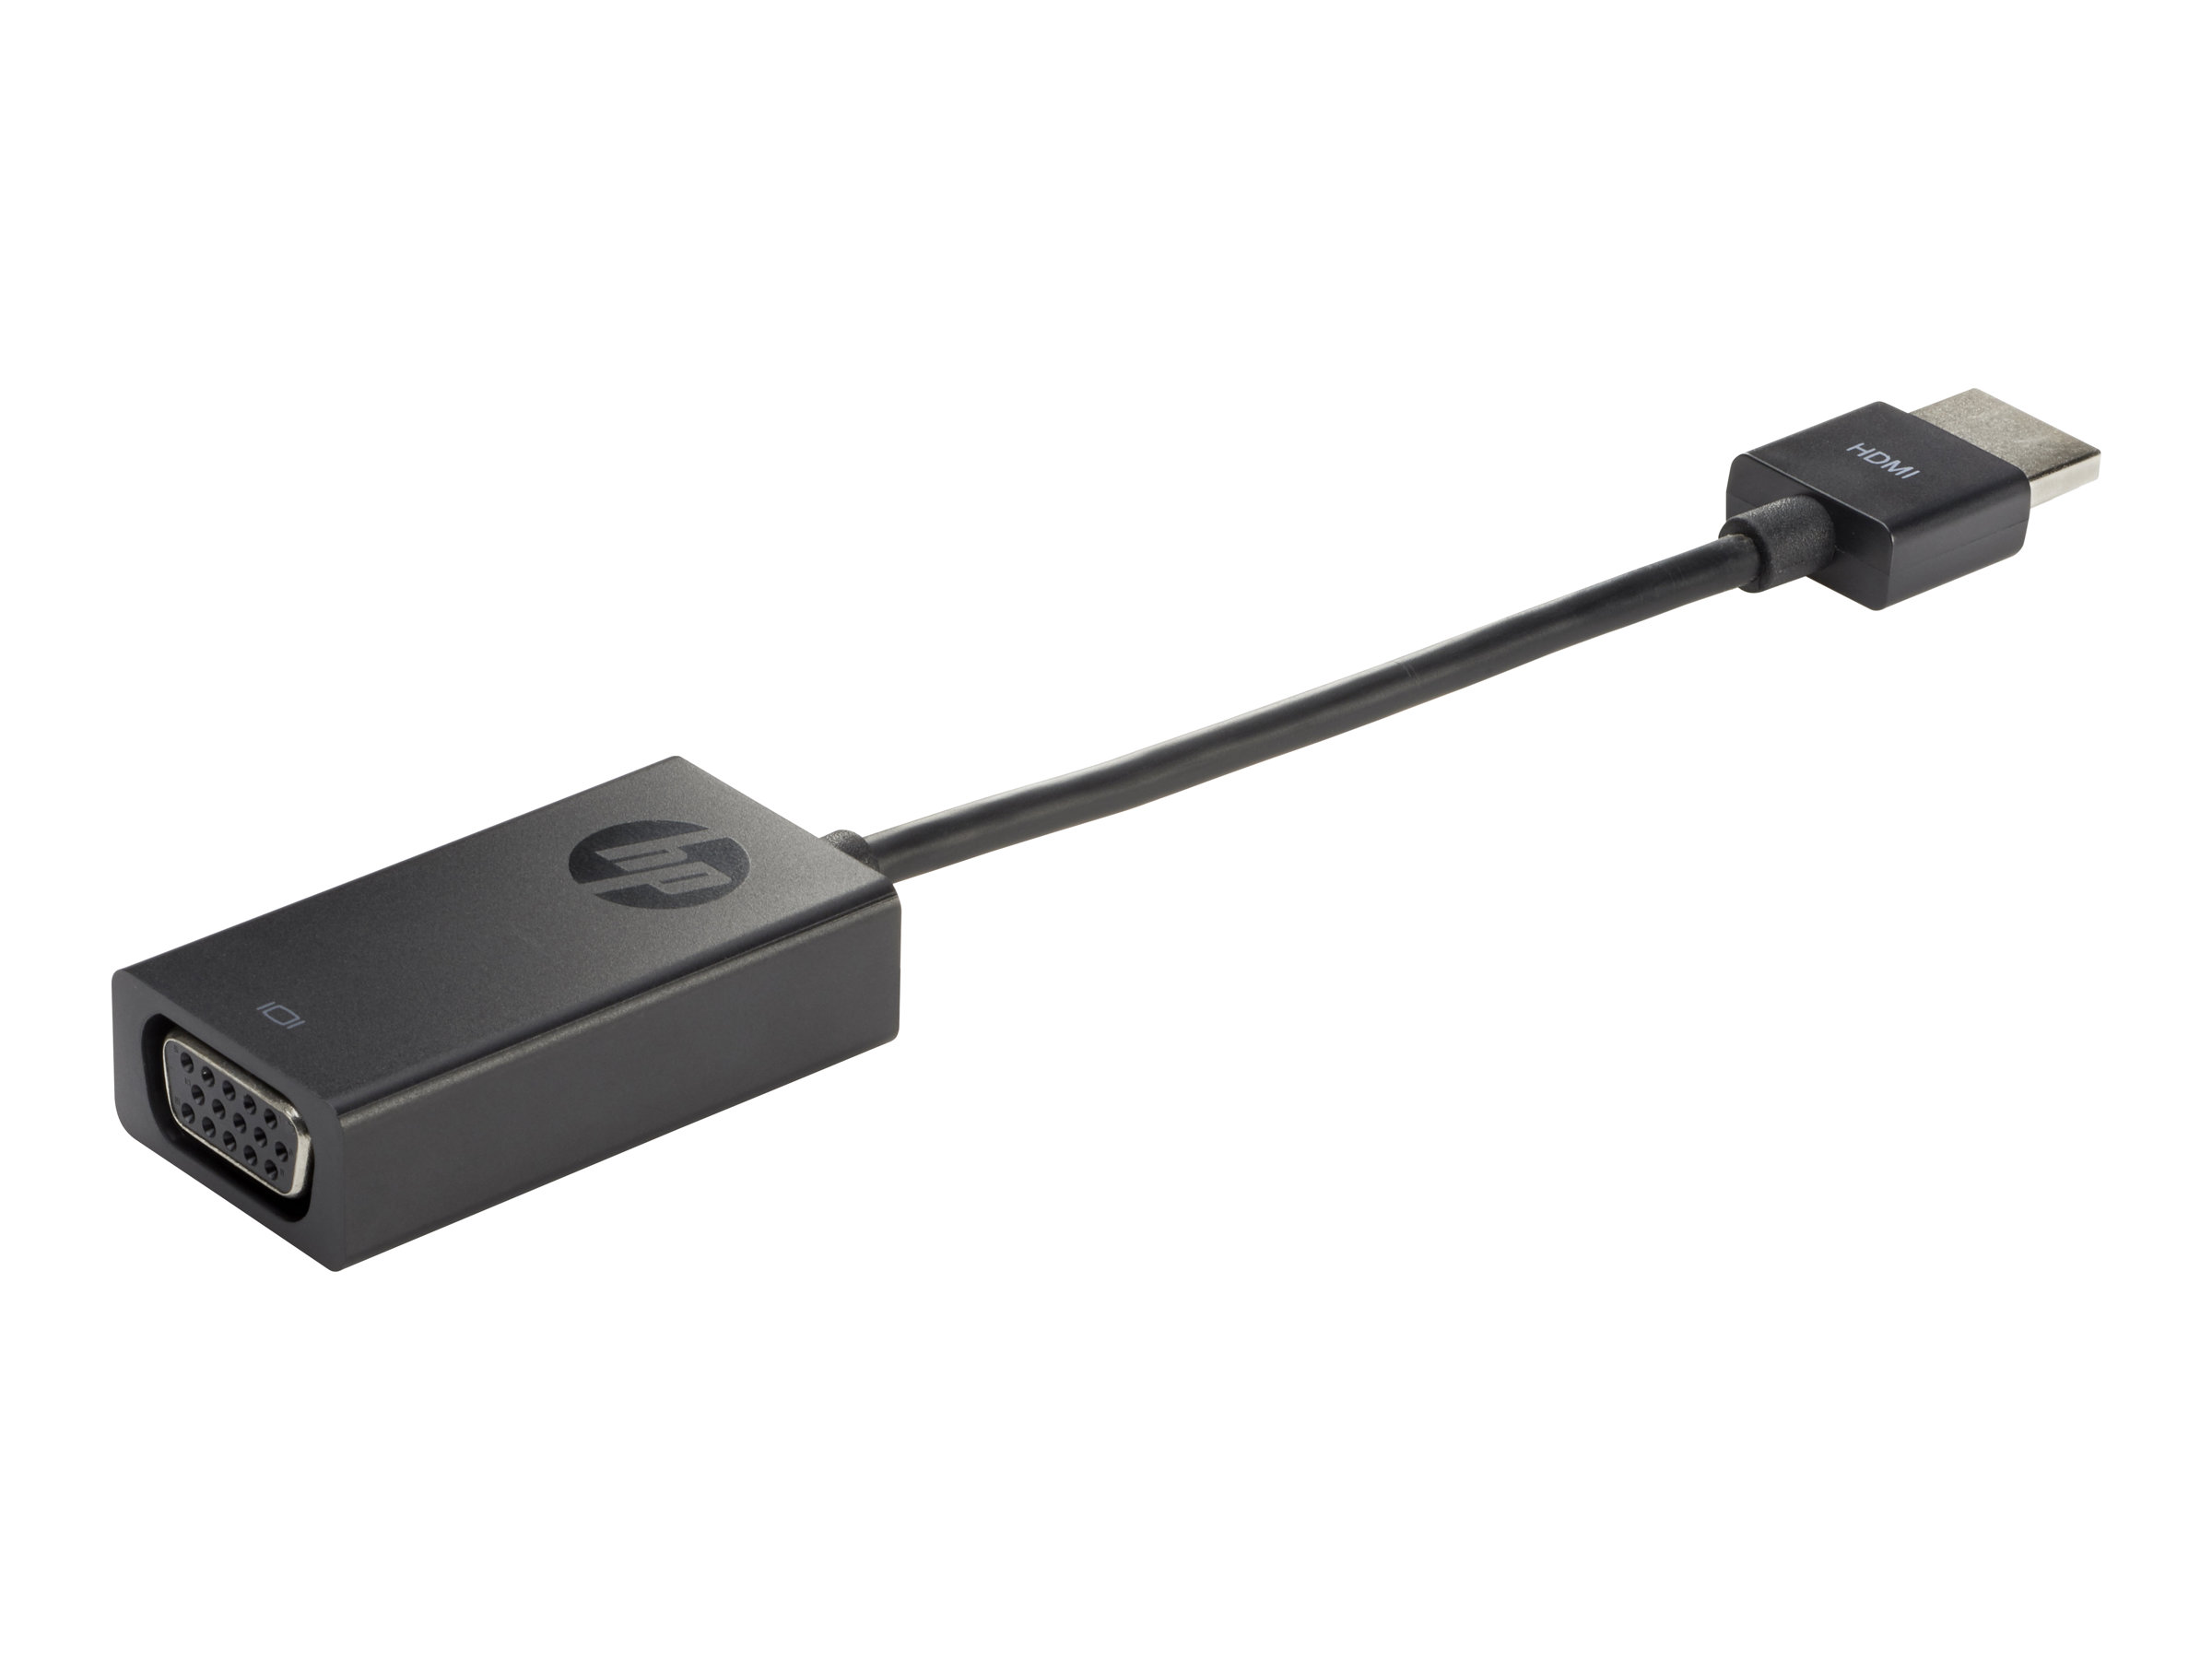 HP HDMI to VGA Display Adapter - Adaptateur vidéo - HD-15 (VGA) femelle pour HDMI mâle - H4F02AA#AC3 - Accessoires pour téléviseurs